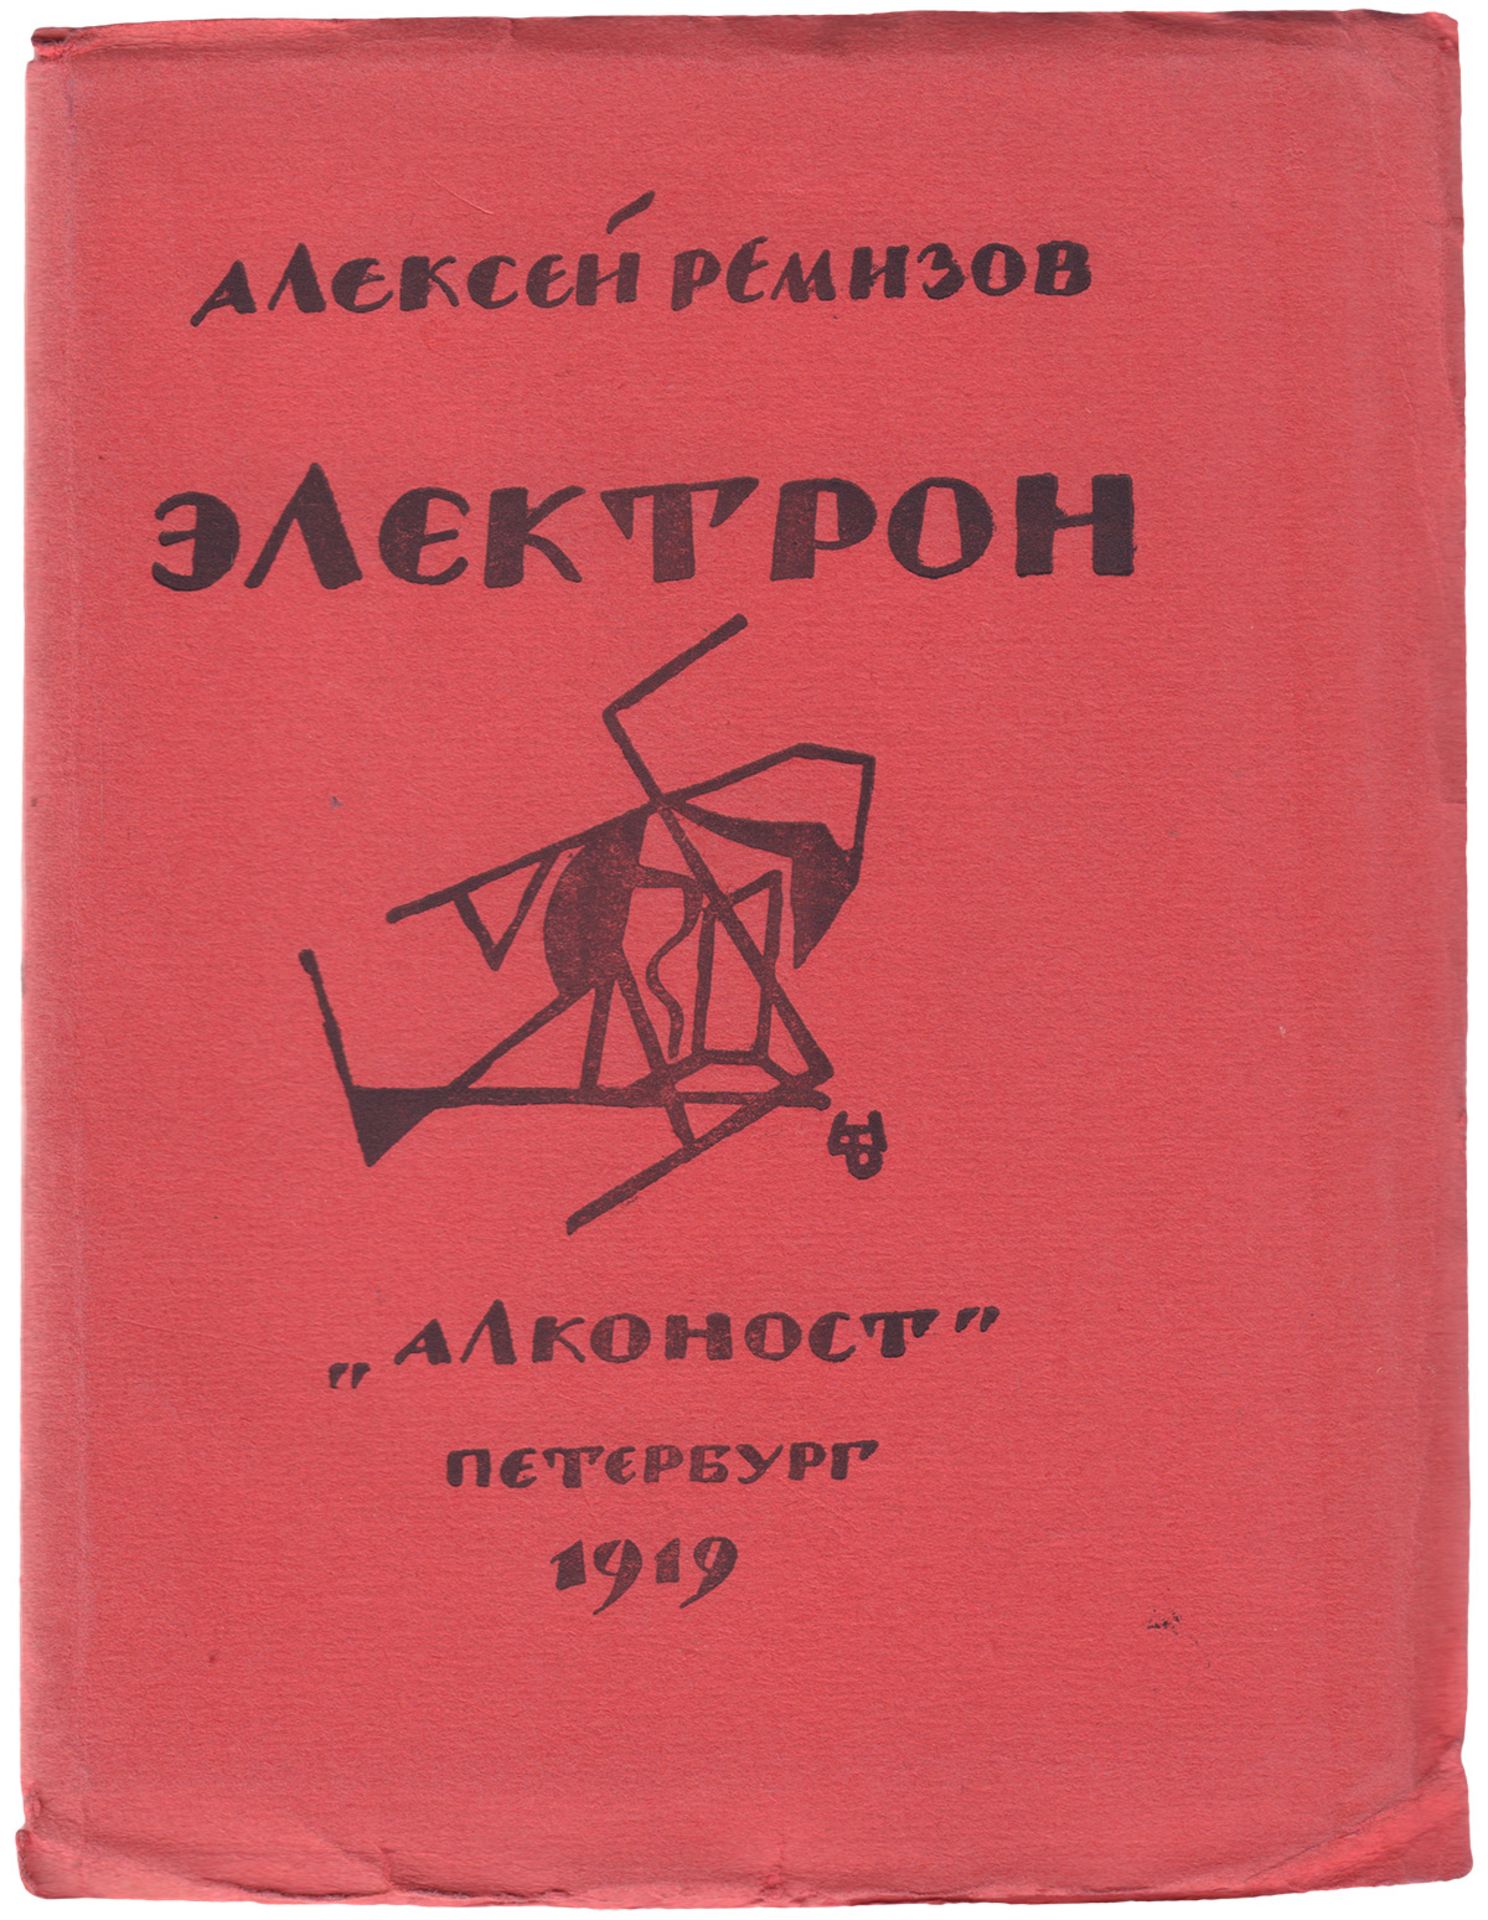 [Remizov, A.M., cover, Soviet]. Remizov, A.M. Electron : [Poems] / Alexey Remizov. - Petersburg: Al